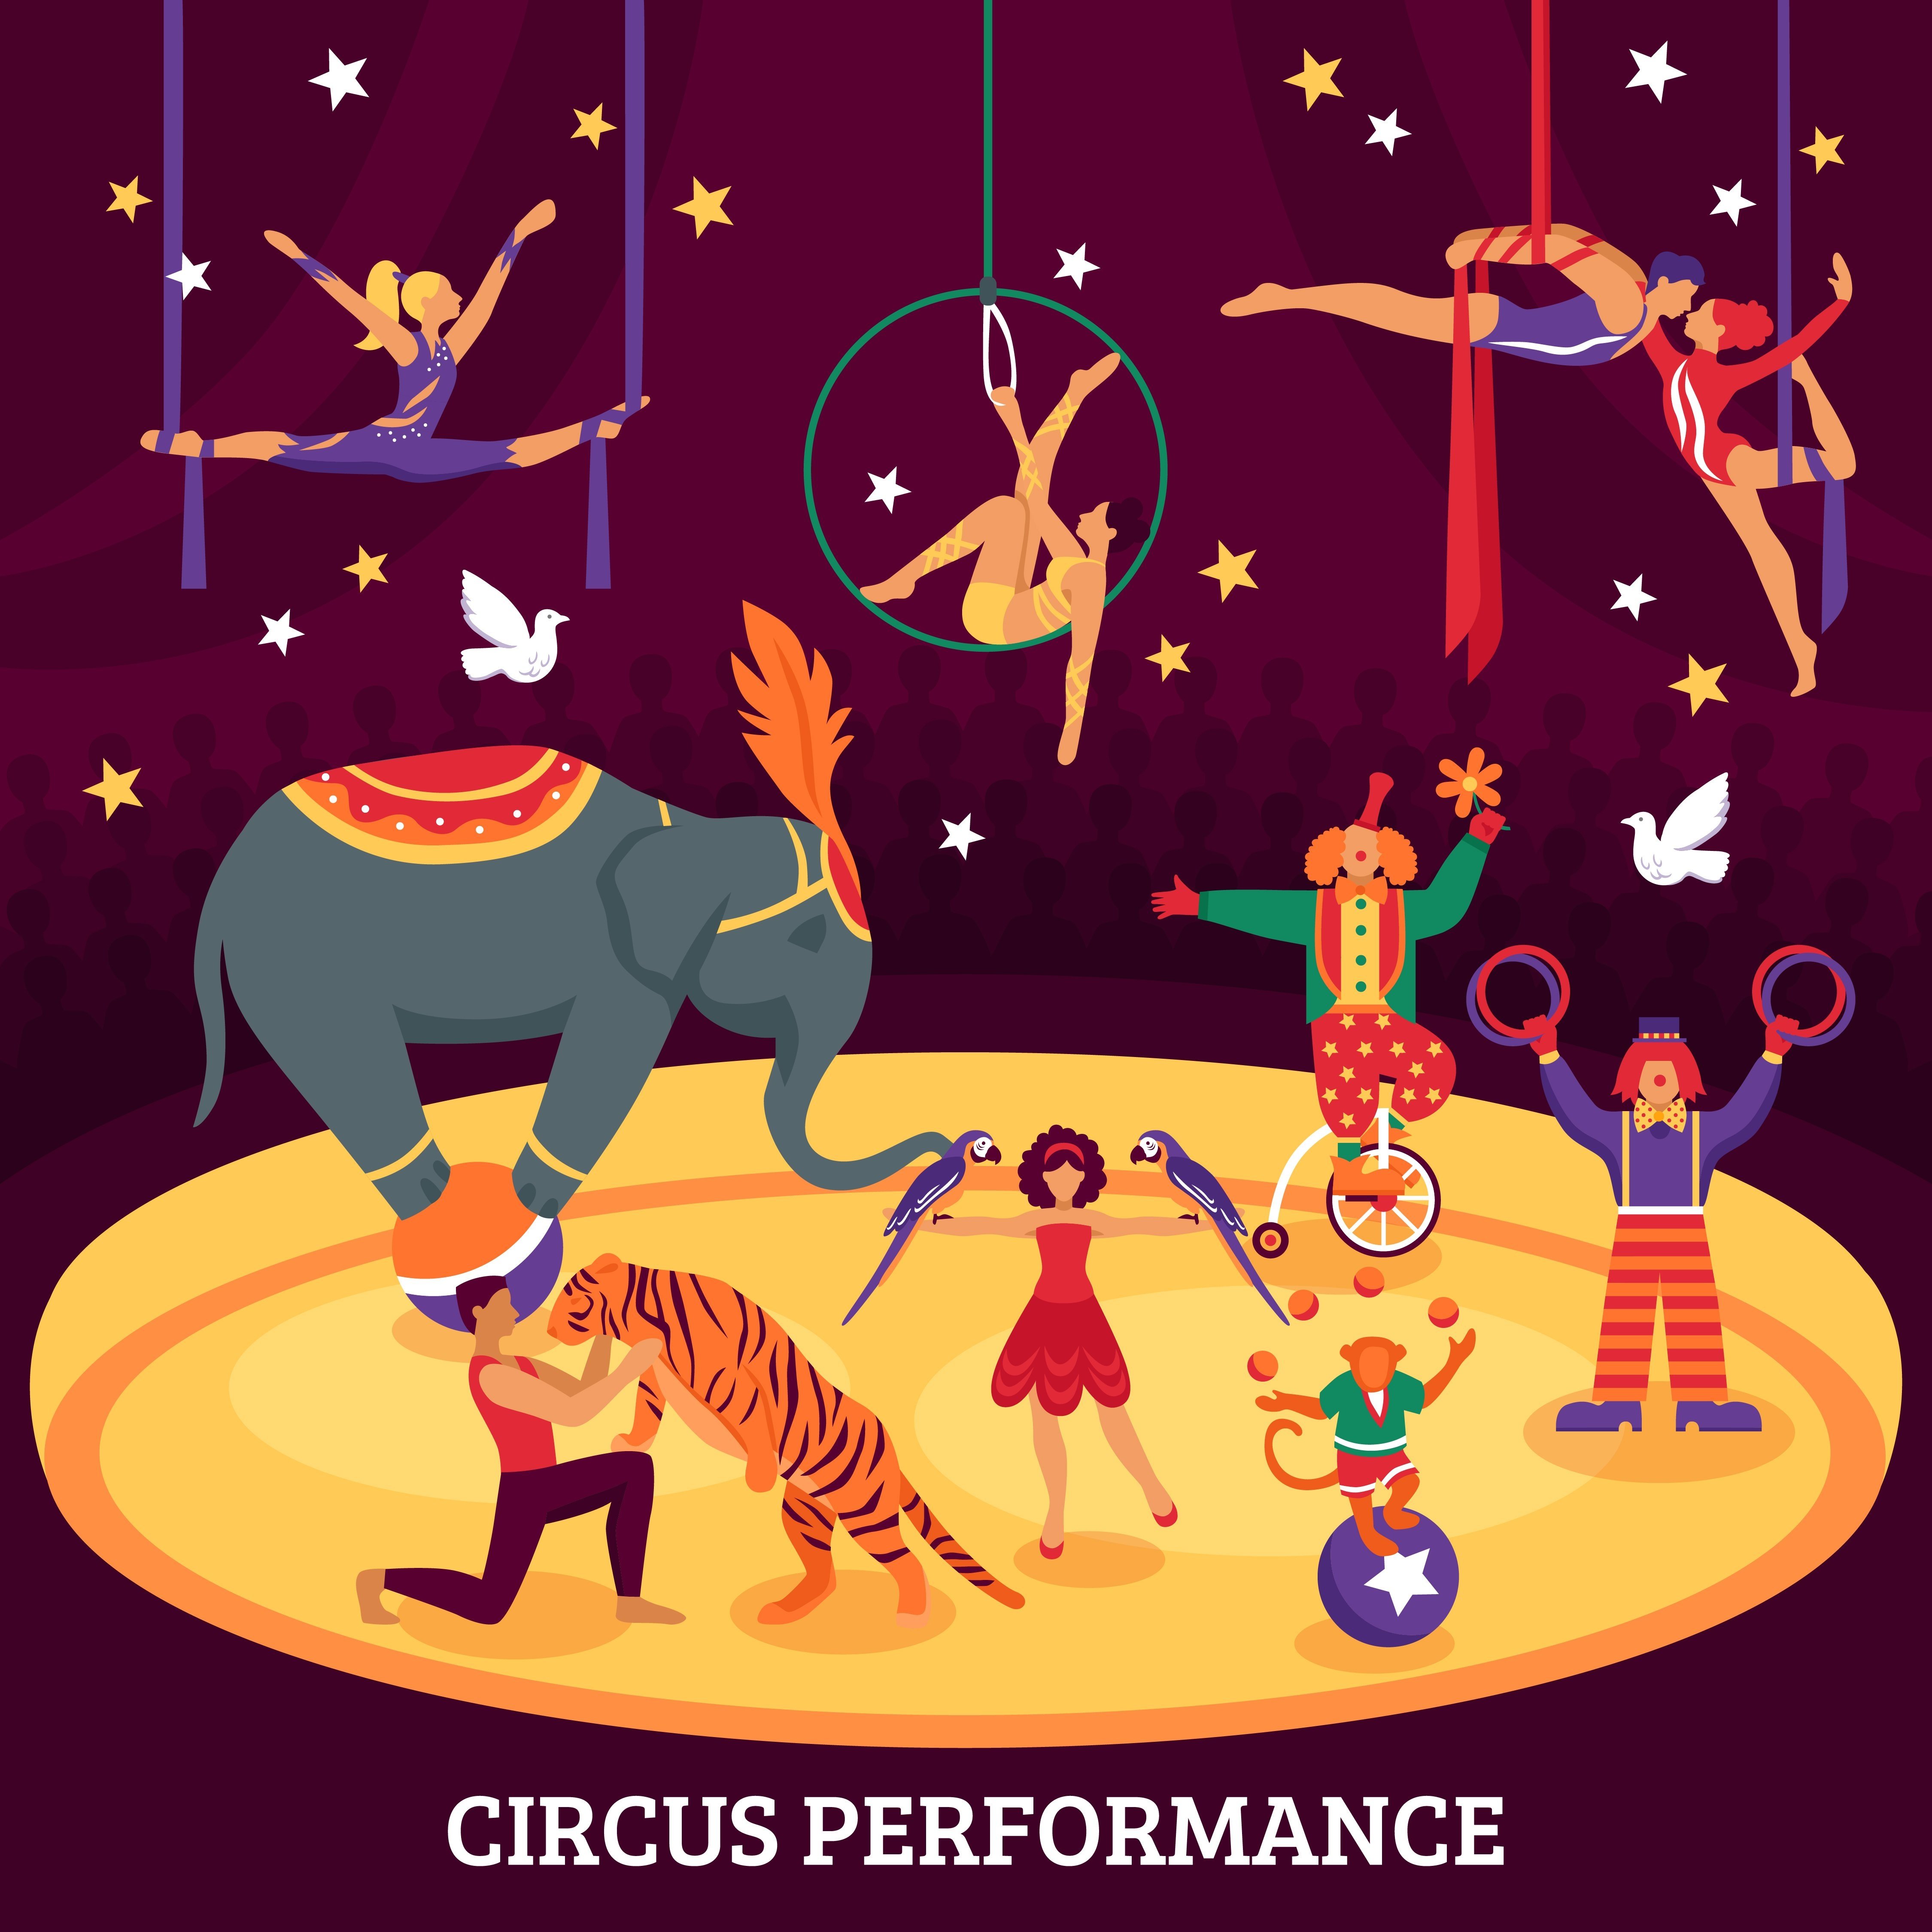 Как нарисовать цирк